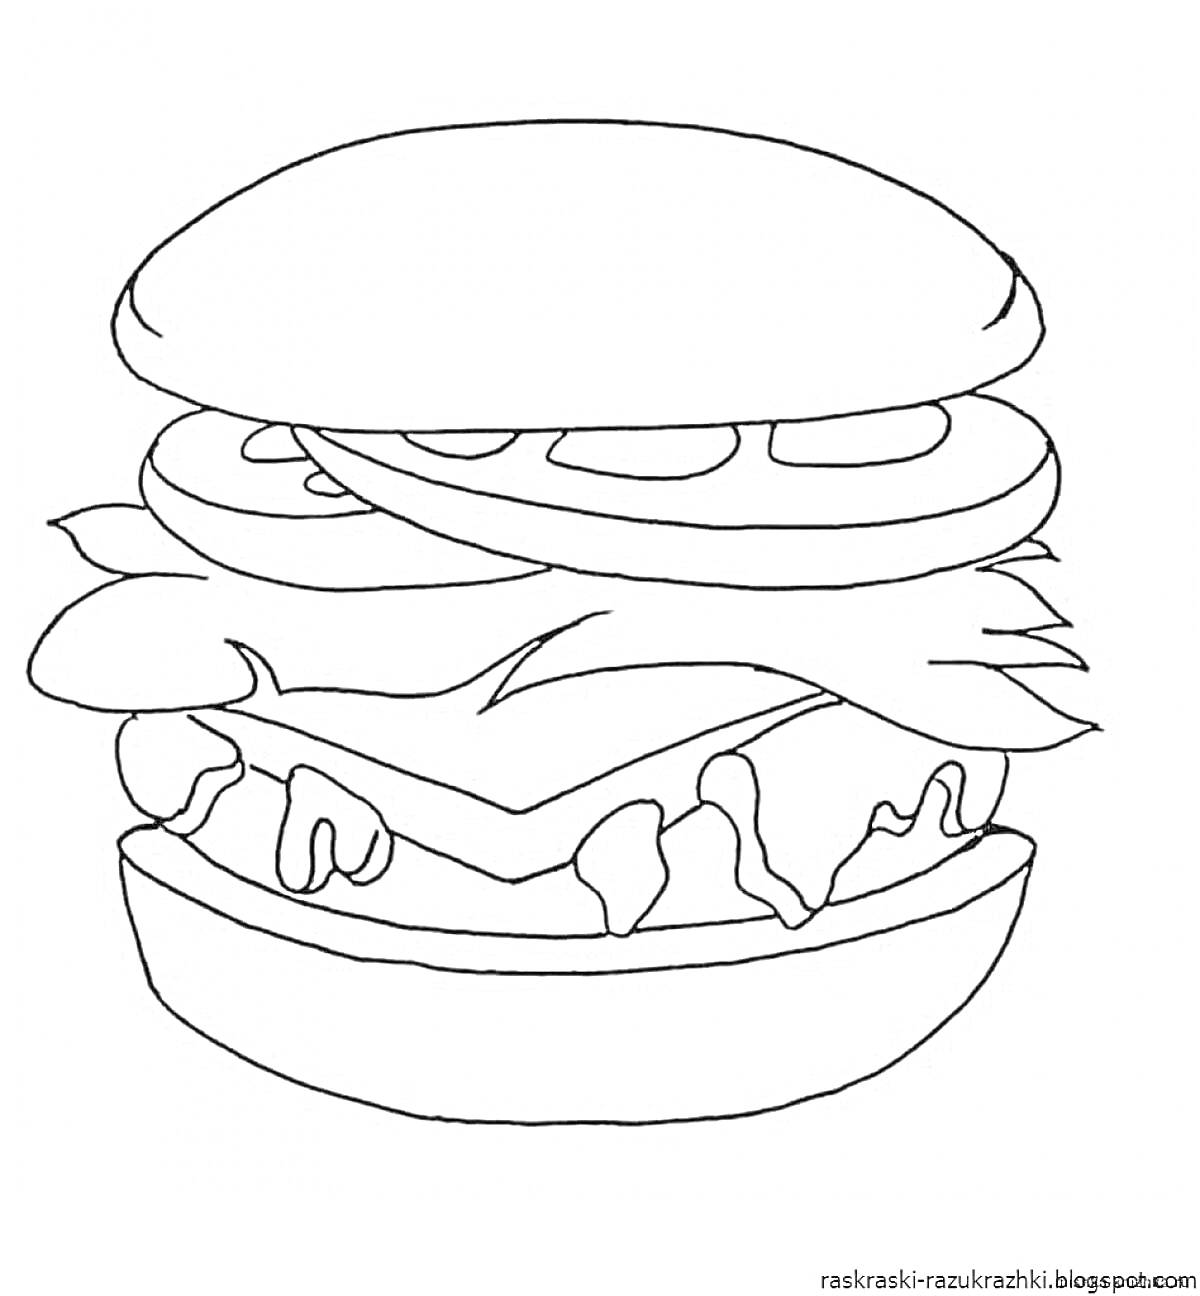 Раскраска Гамбургер с листьями салата, сыром, помидорами и соусом